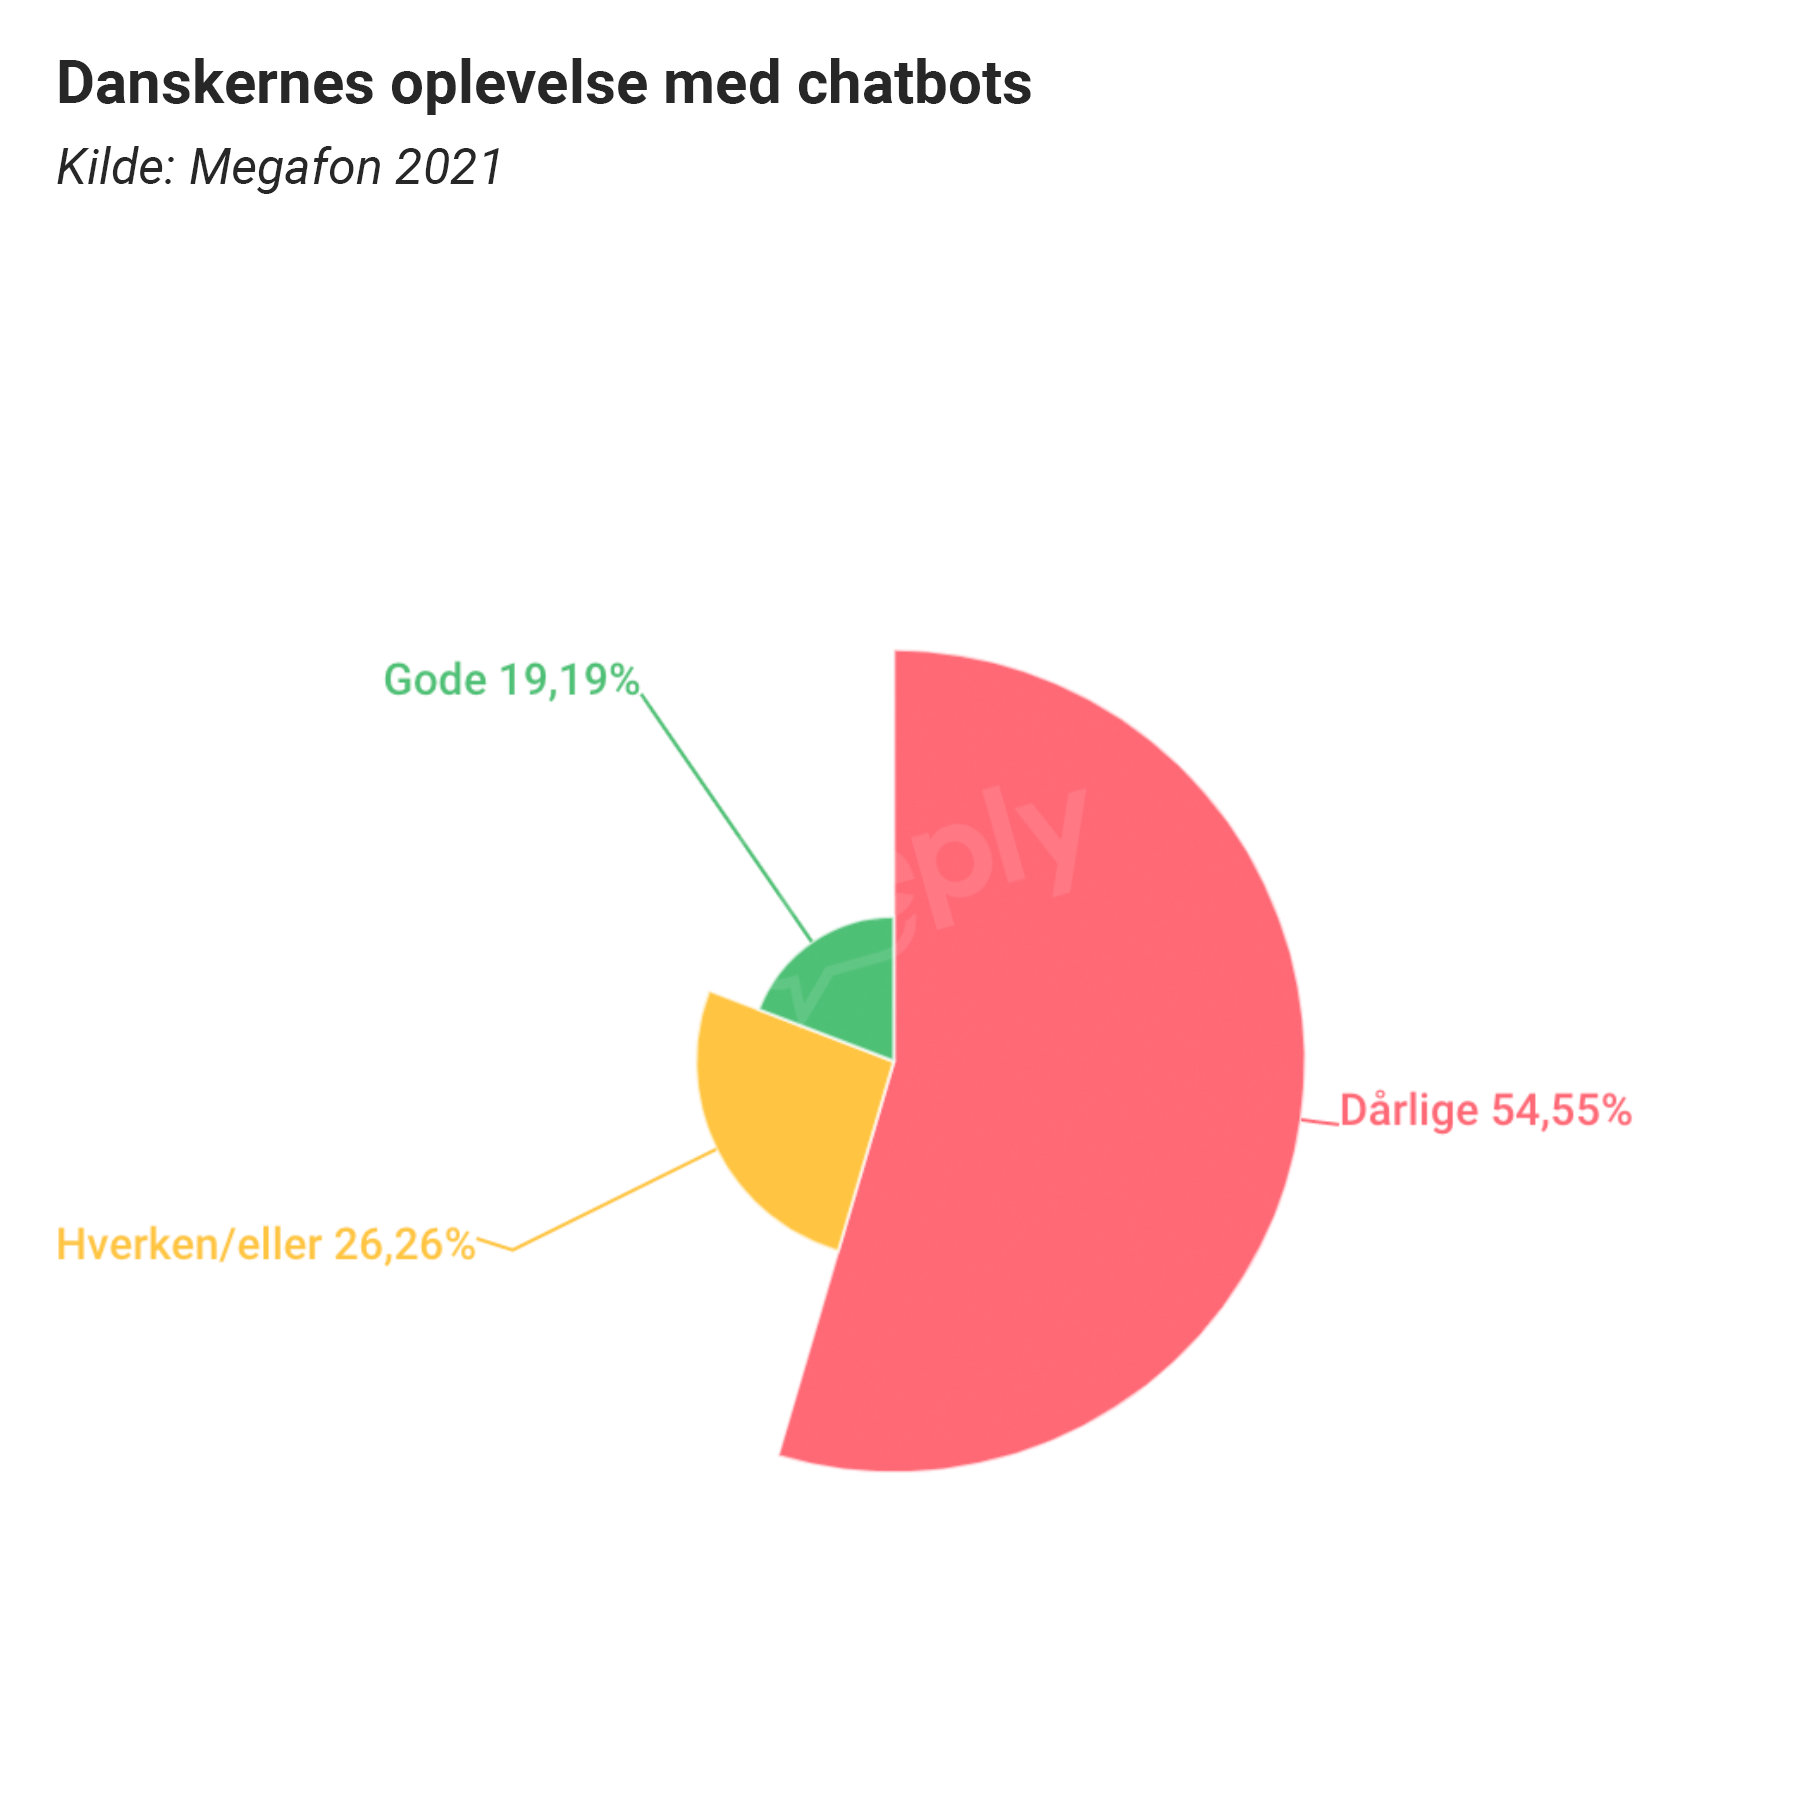 Danskernes oplevelse med Chatbots